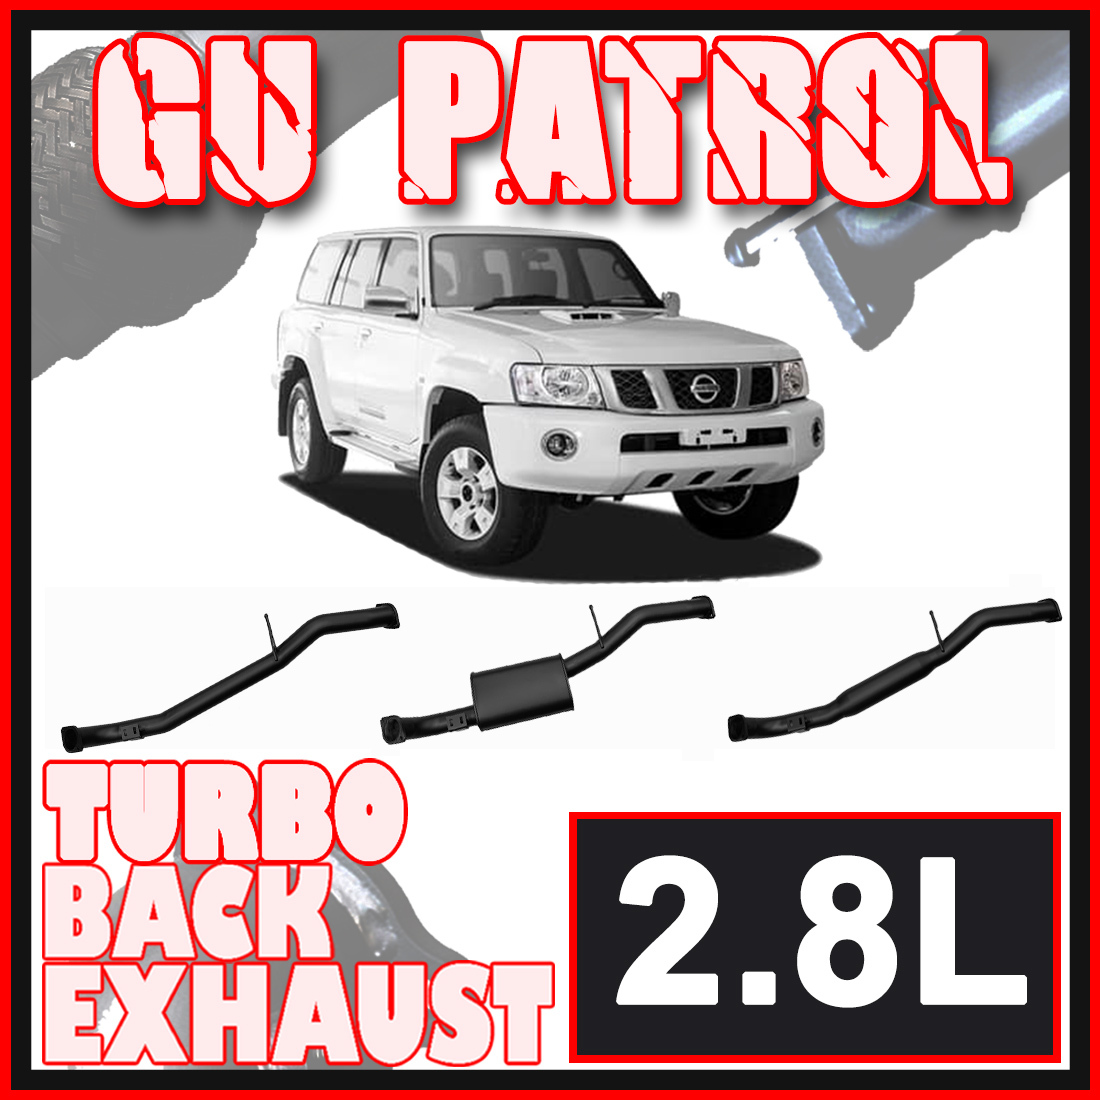 Nissan GU Patrol Exhaust Wagon 2.8L 3" Inch Systems image